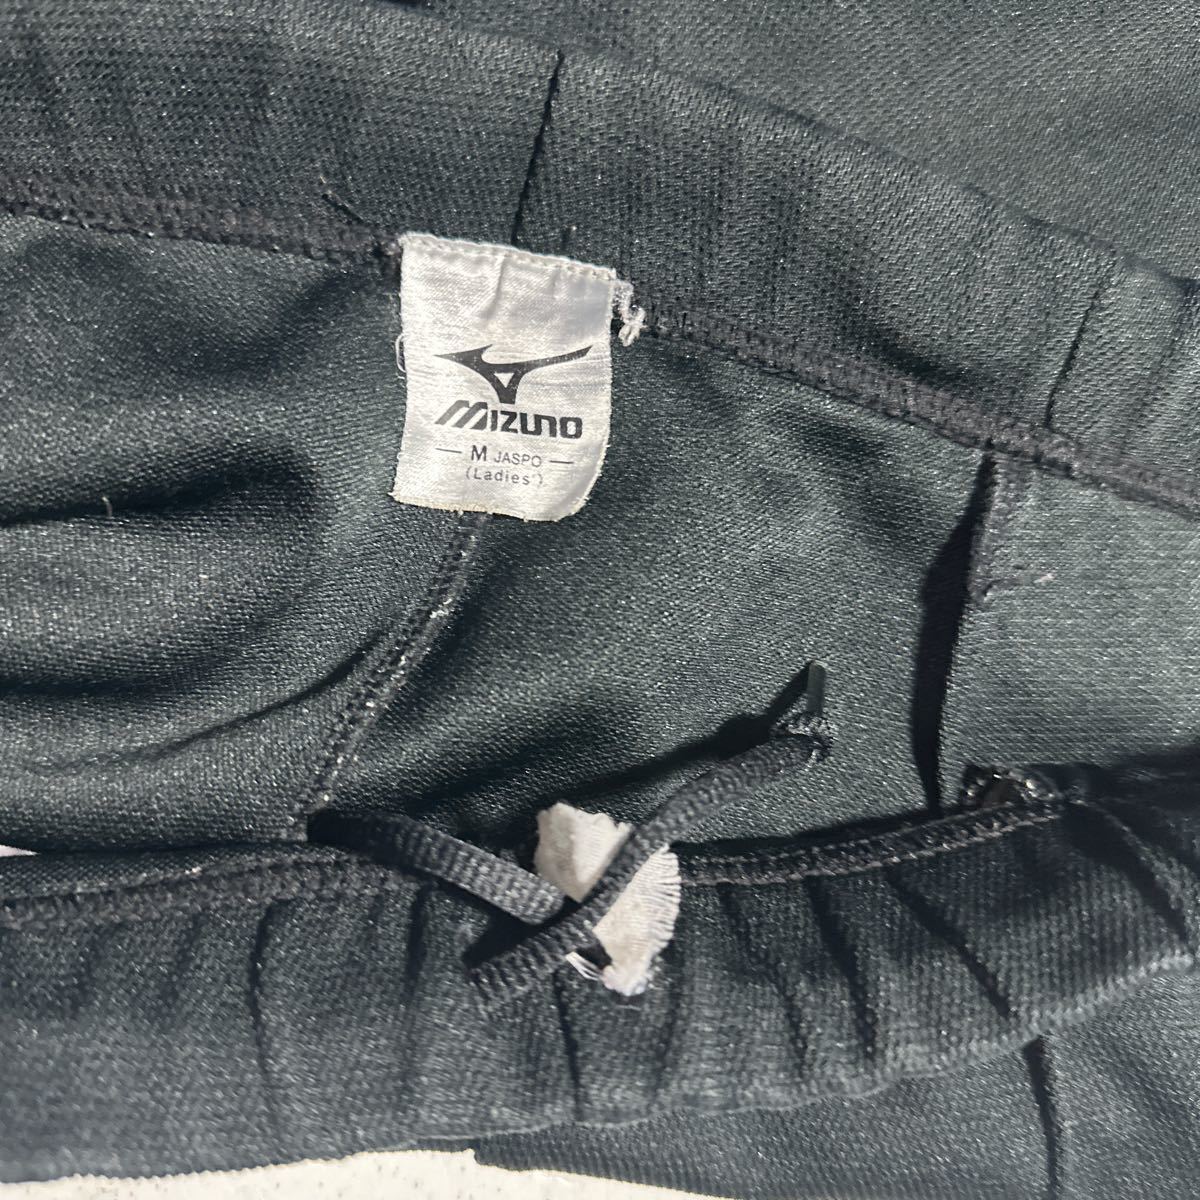  Mizuno MIZUNO чёрный черный карман есть спорт тренировка для шорты женский M размер 